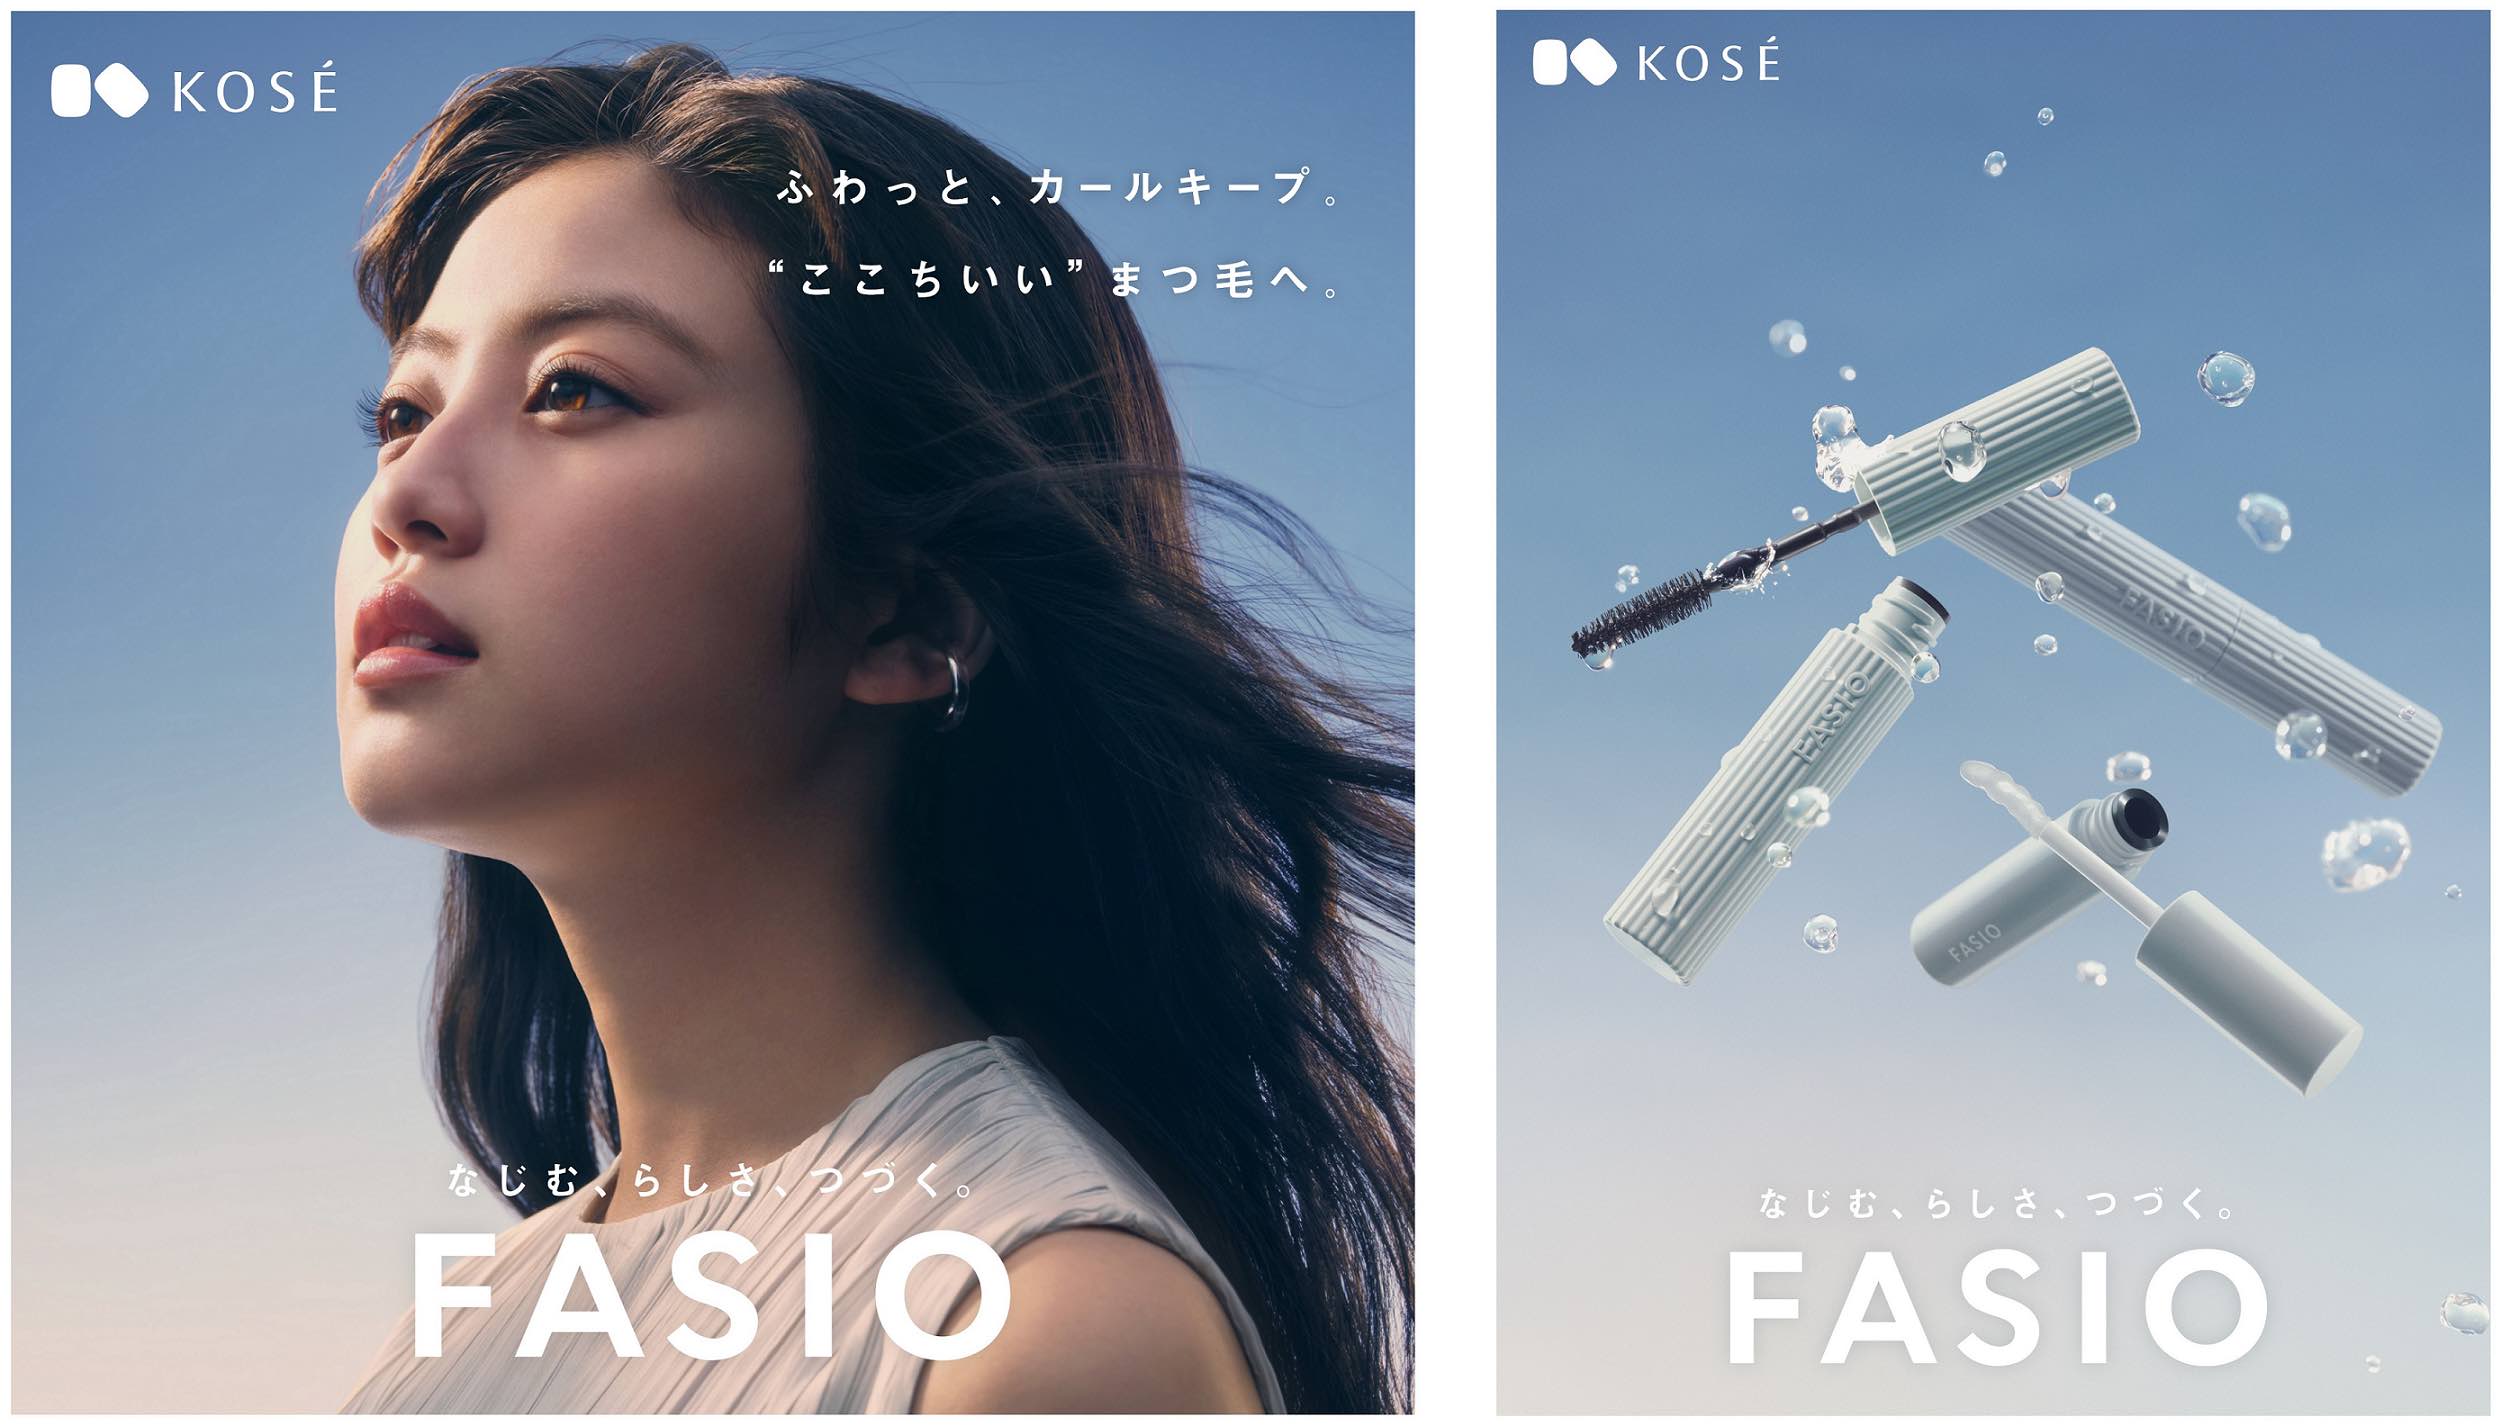 コーセー「ファシオ」、今田美桜の新ビジュアル、スペシャルムービー公開